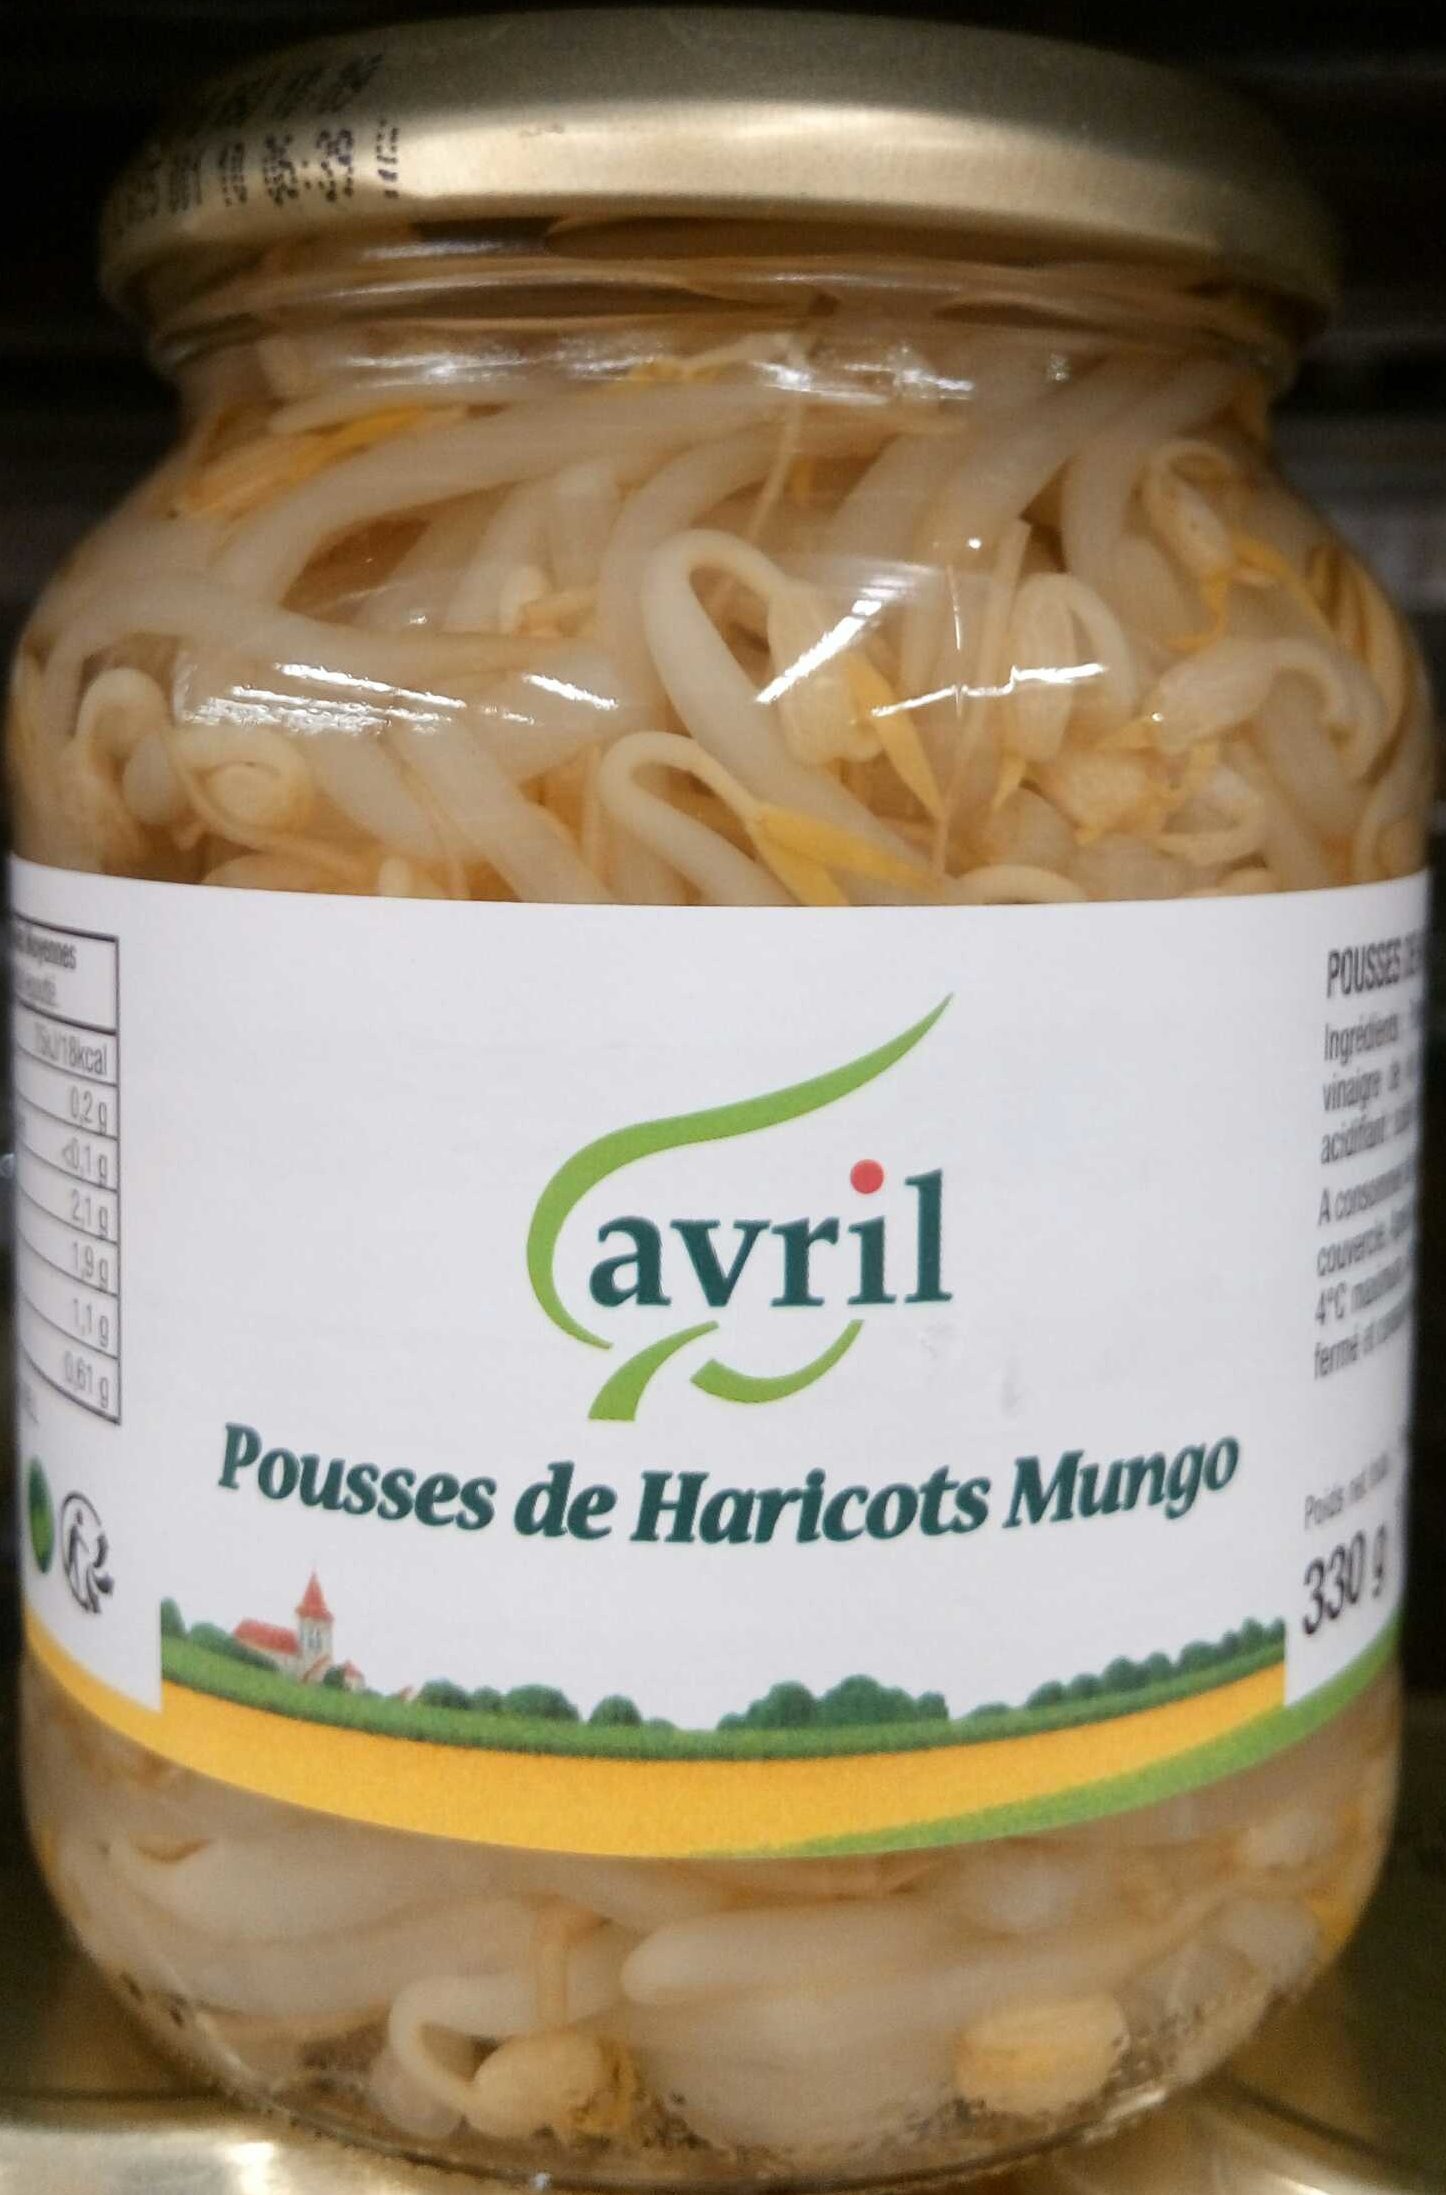 Pousses de Haricots Mungo - Produit - fr